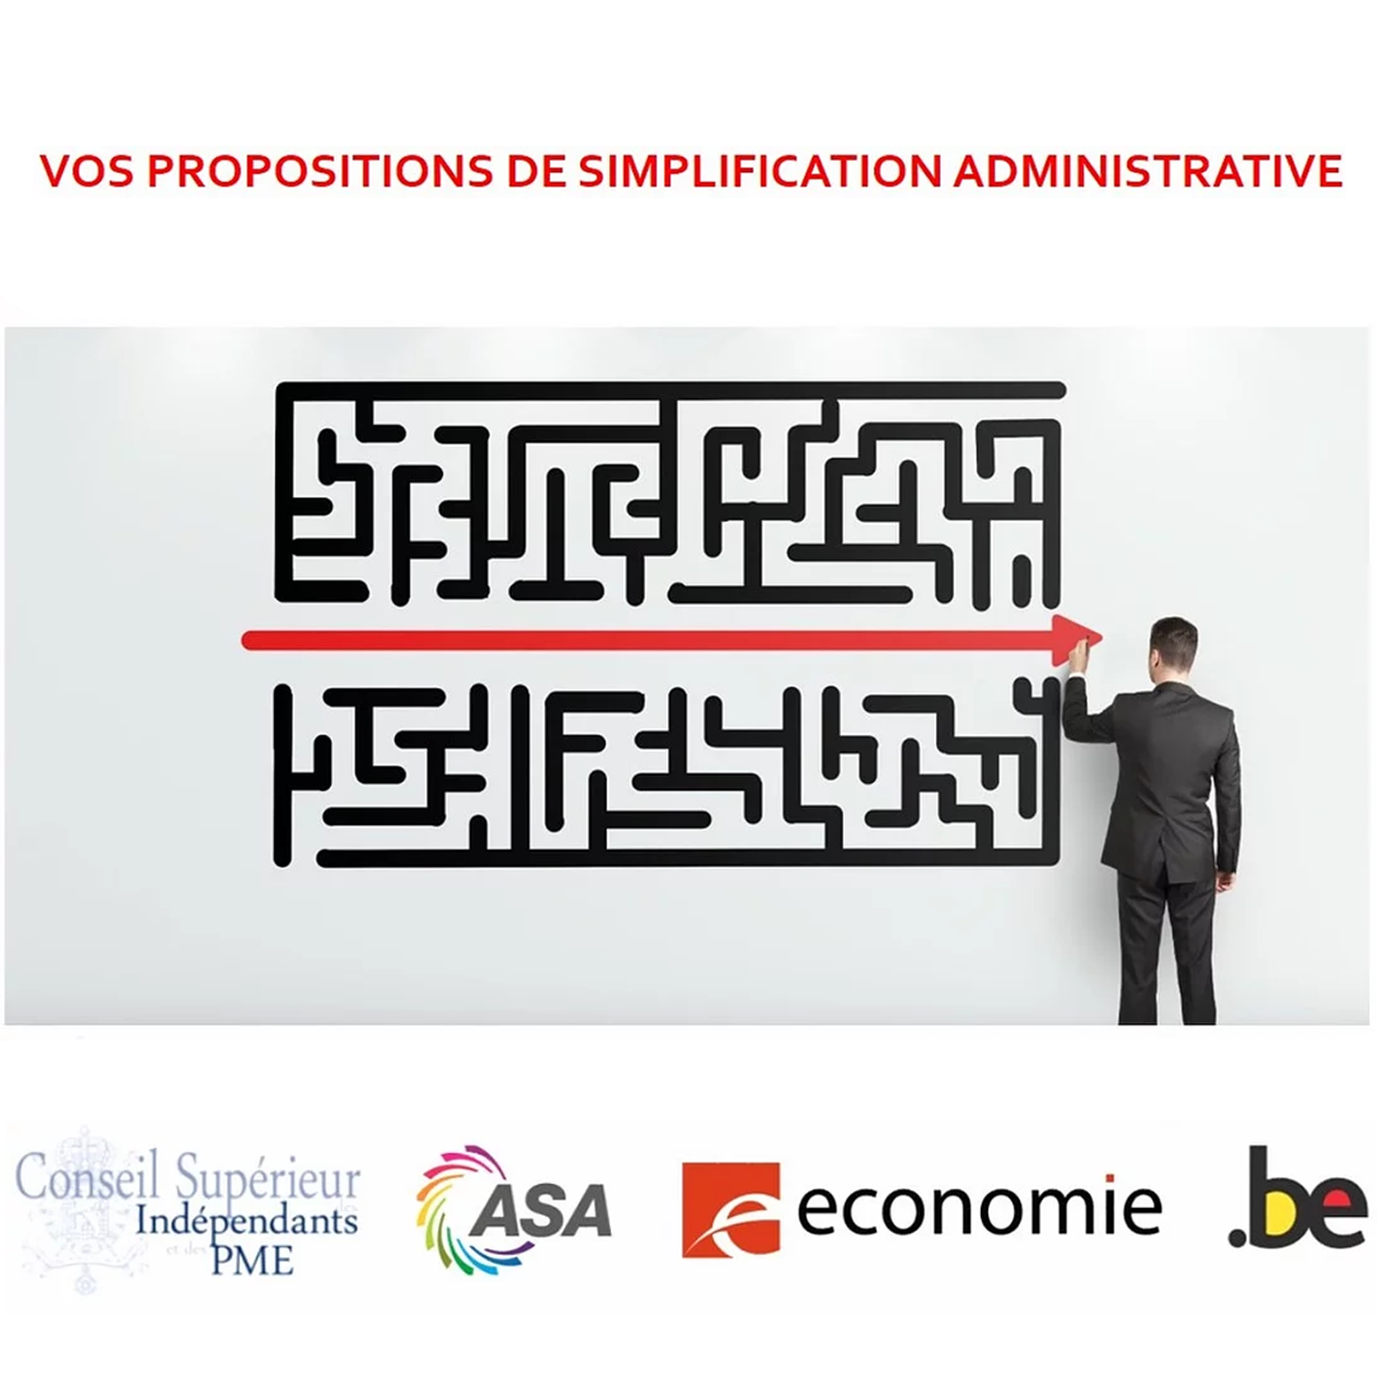 Indépendants, participez à la simplification administrative et envoyez vos propositions !